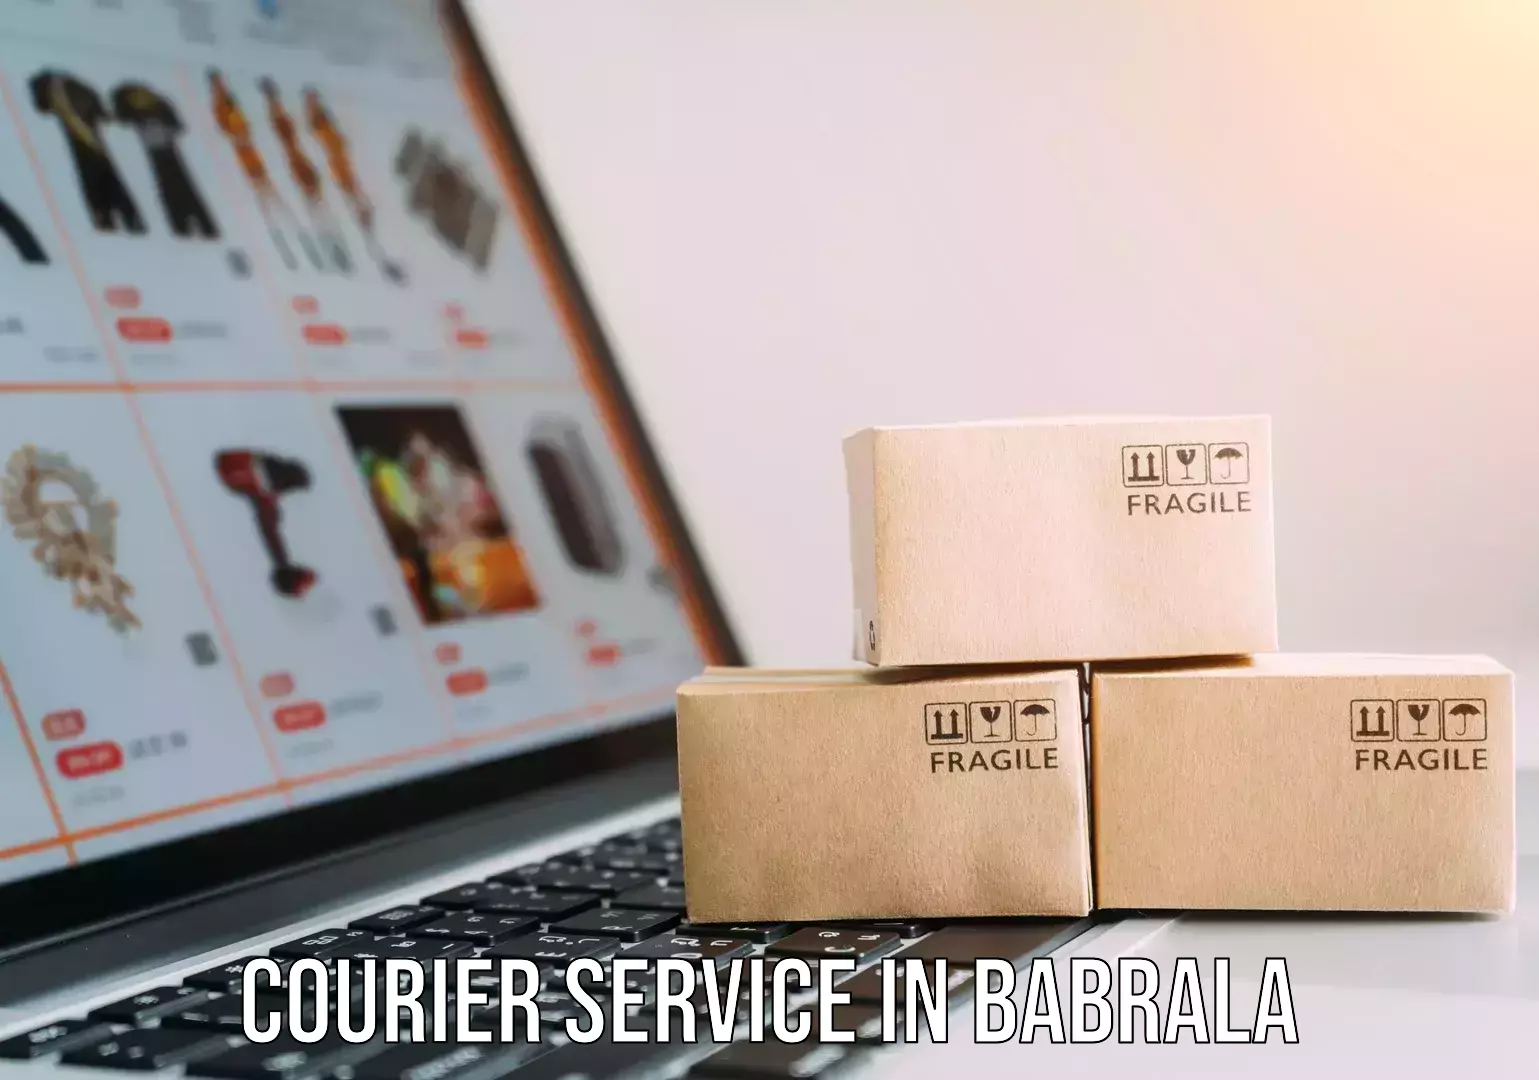 Customer-centric shipping in Babrala